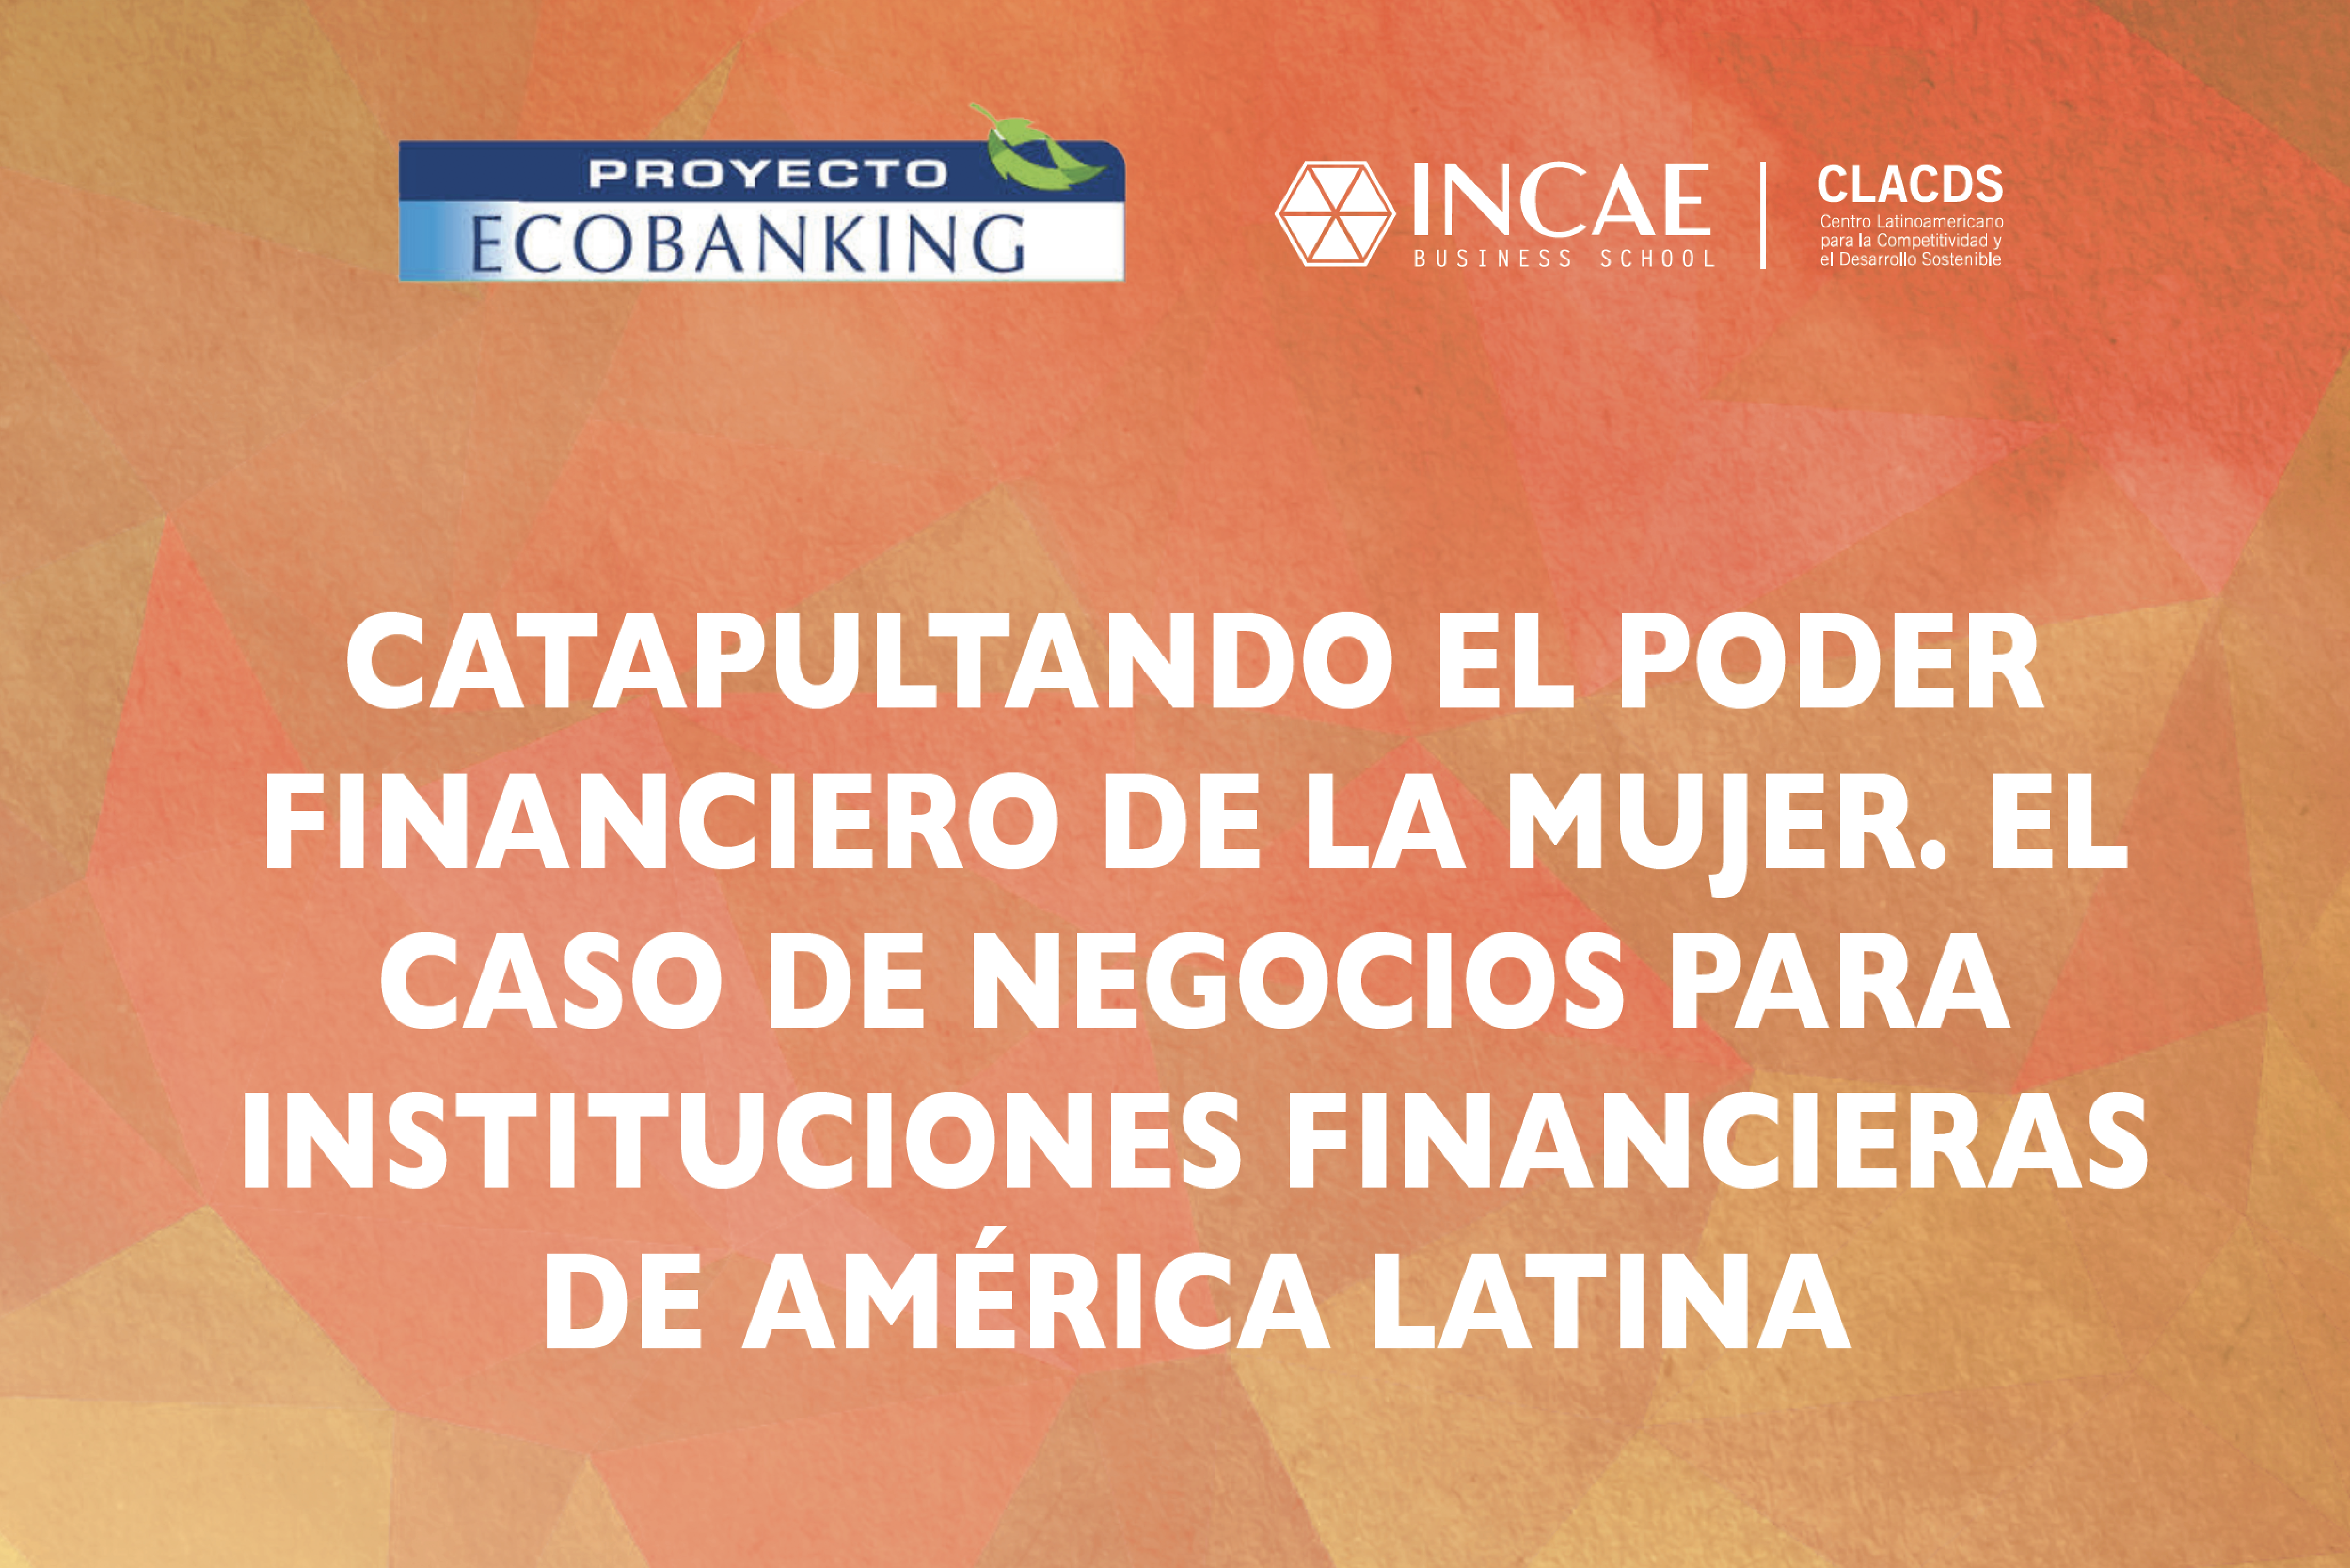 Catapultando el poder Financiero de la mujer. El Caso de negocios para Instituciones financieras de América Latina